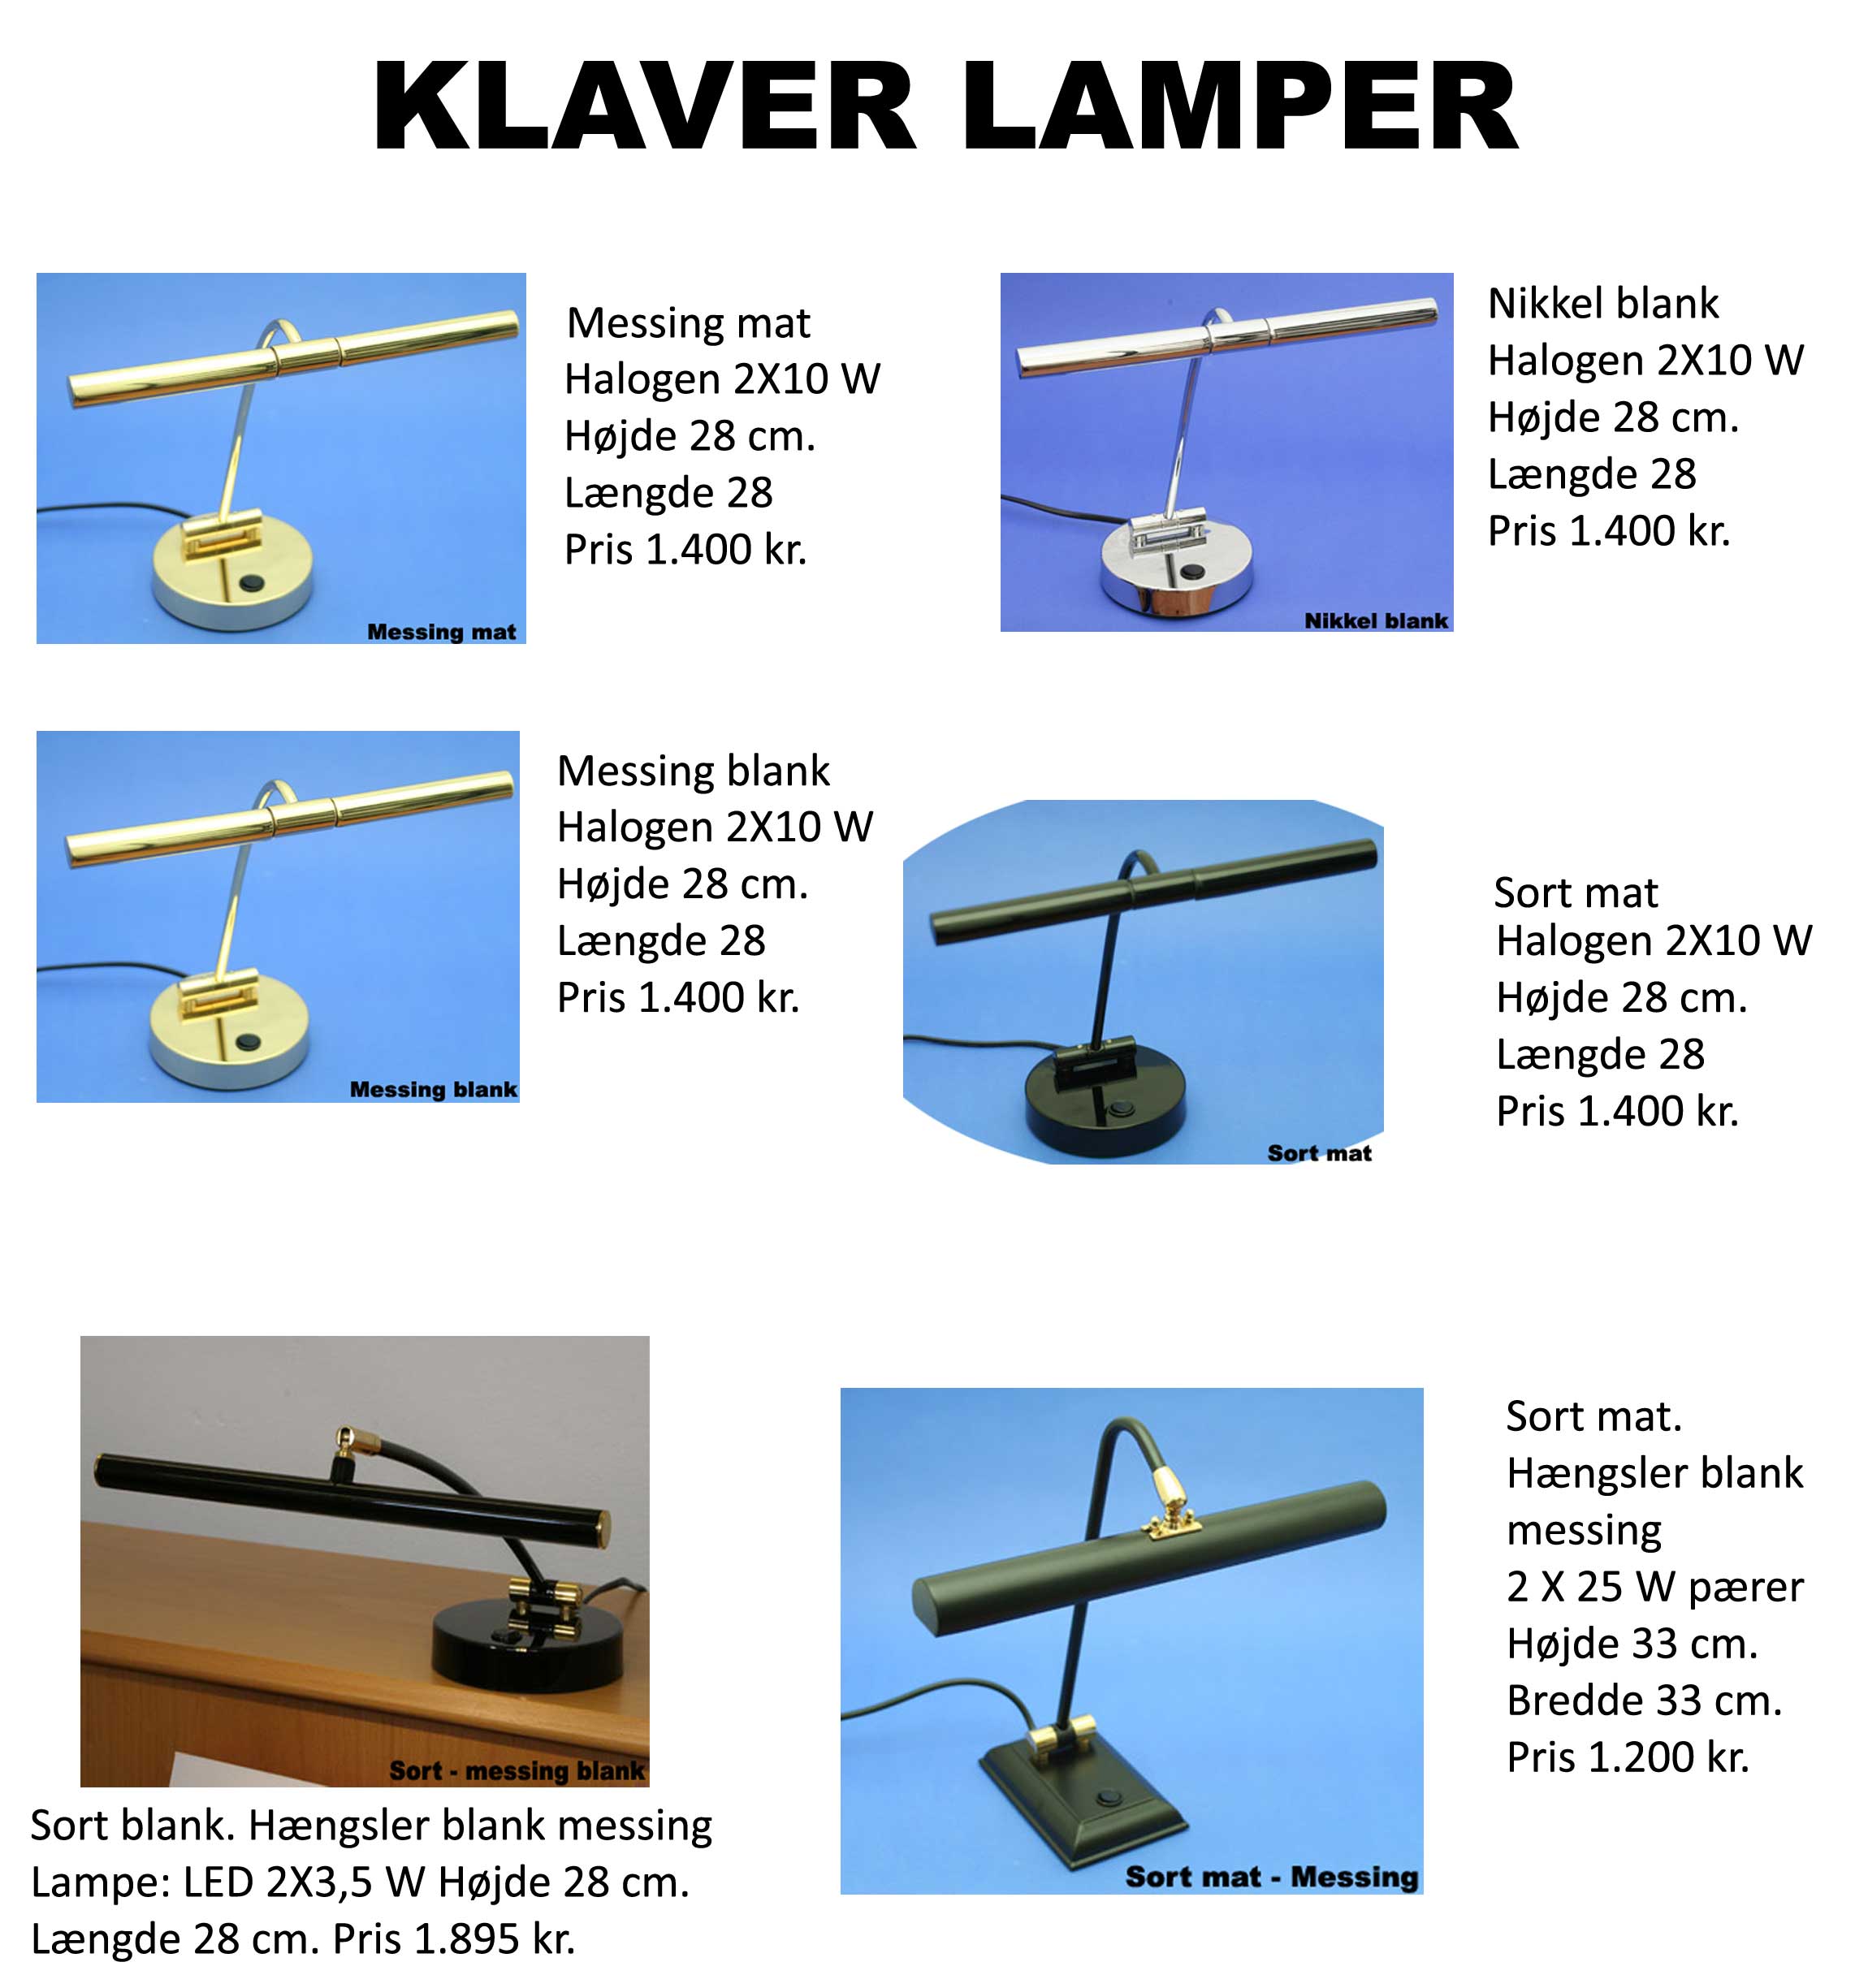 images/produkter/klaverlamper/Reklame-piano-lamper-tyske.jpg